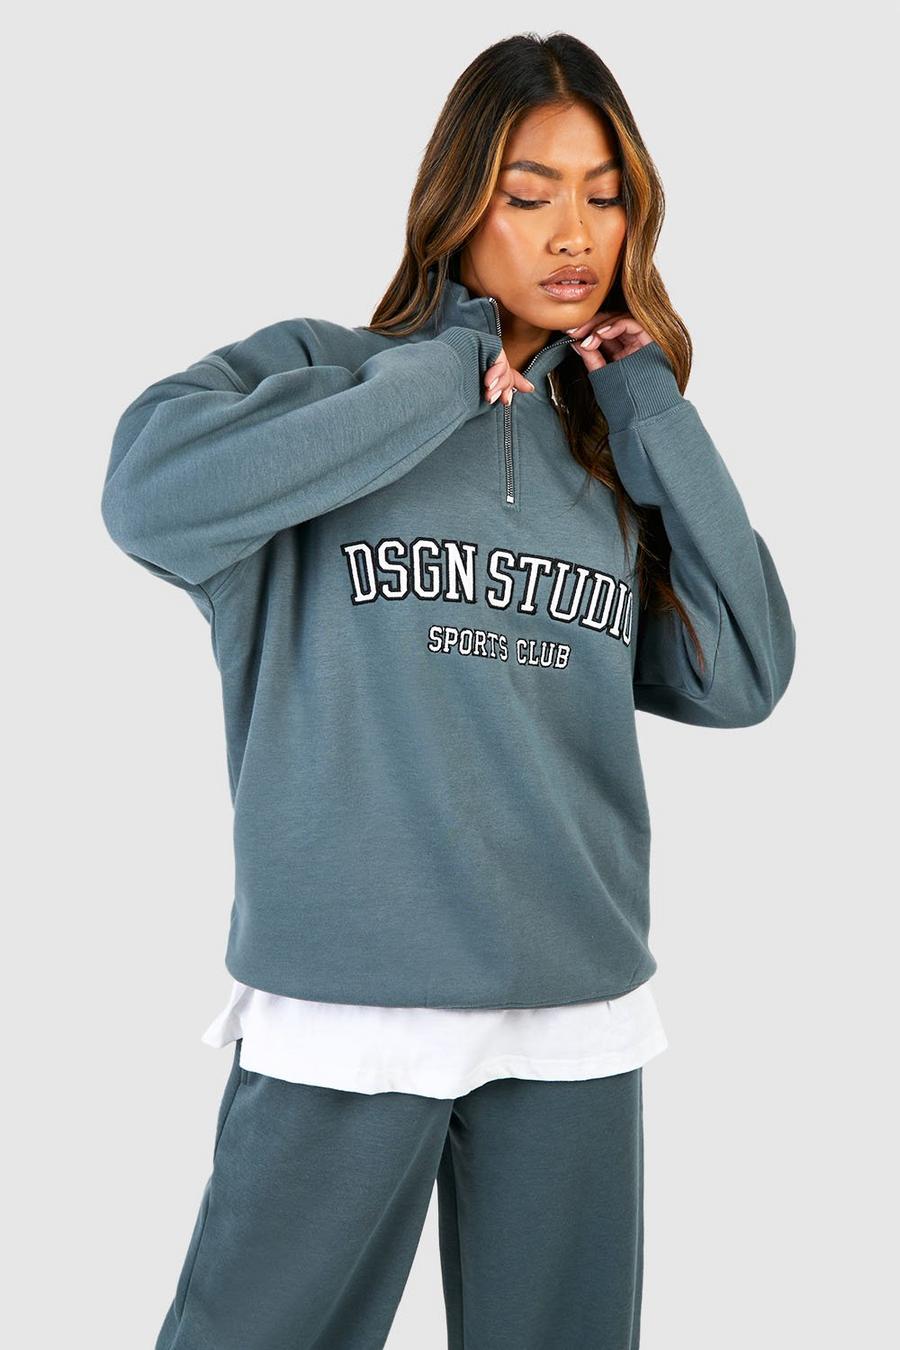 Sage green Dsgn Studio Applique Oversized Half Zip Sweatshirt